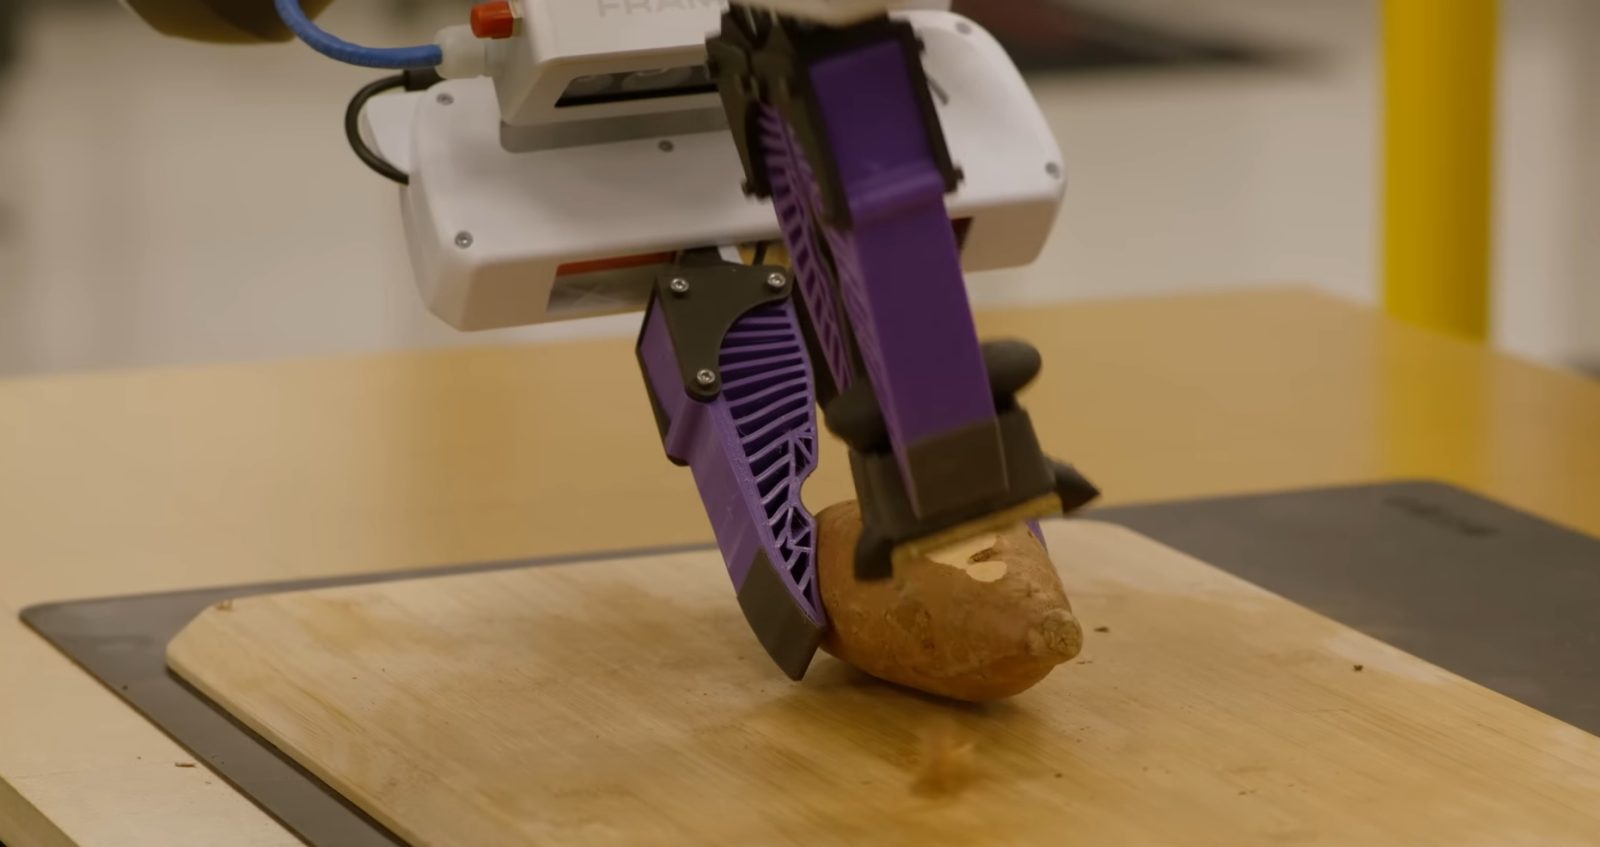 Toyota uczy roboty obierać ziemniaki (źródło: Youtube)